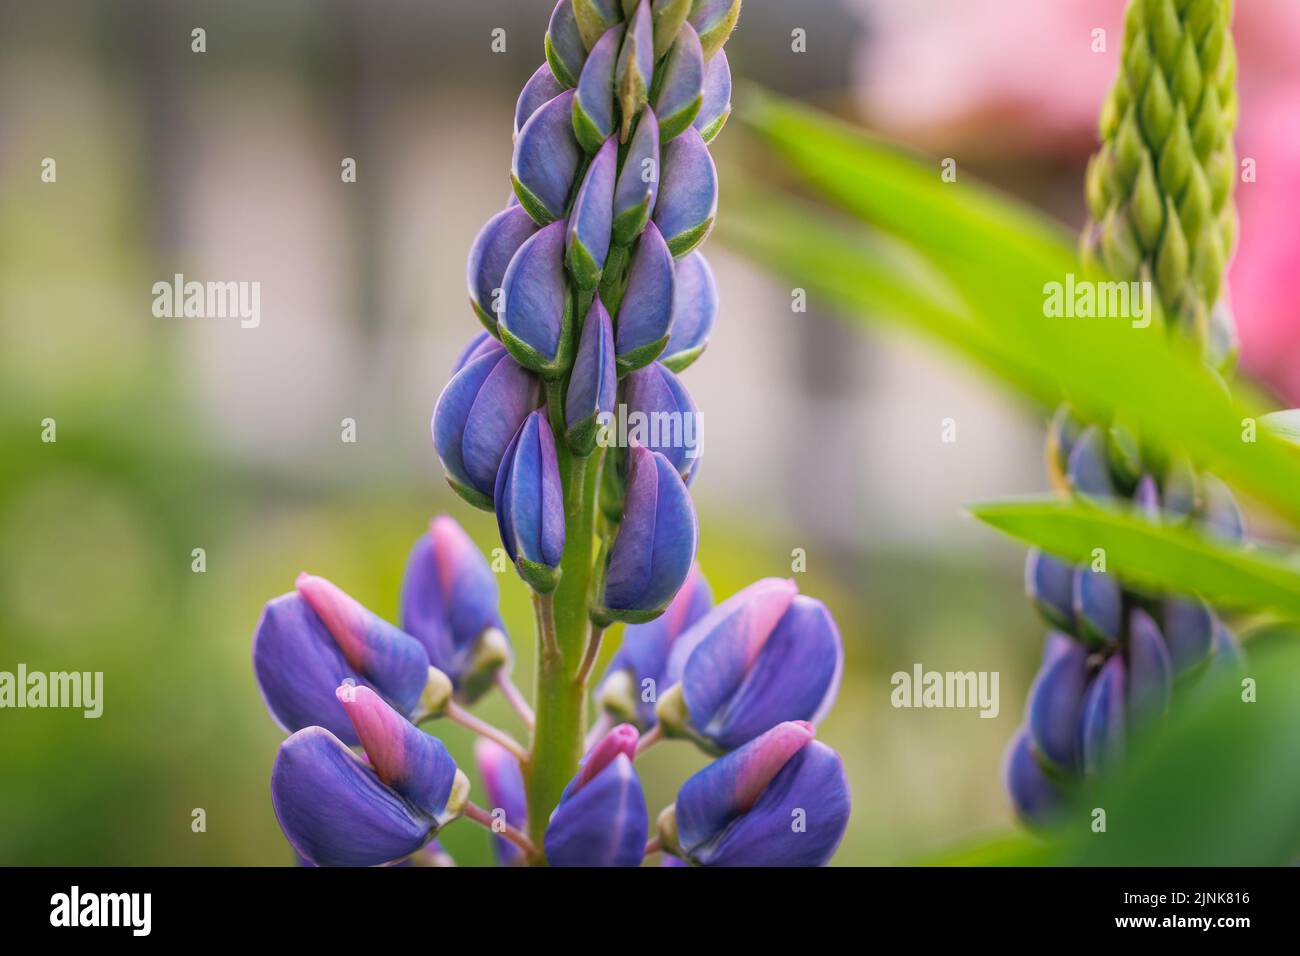 Detalles de la flor de Lupinus en el jardín Foto de stock